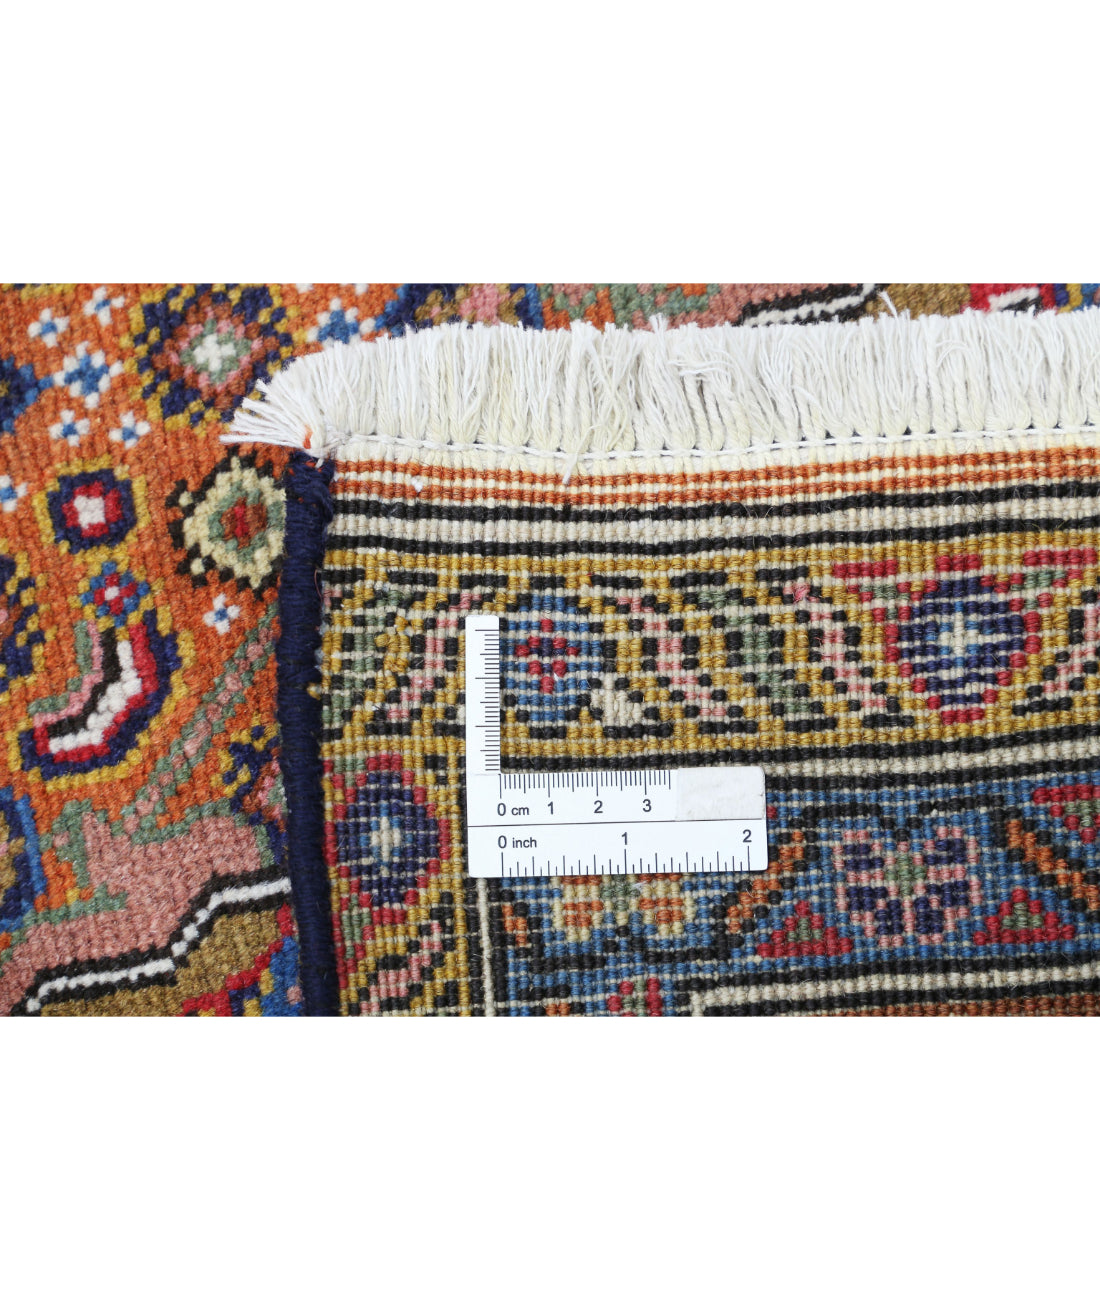 Hand Knotted Persian Bijar Wool Rug - 6'8'' x 9'9'' 6'8'' x 9'9'' (200 X 293) / Rust / Brown